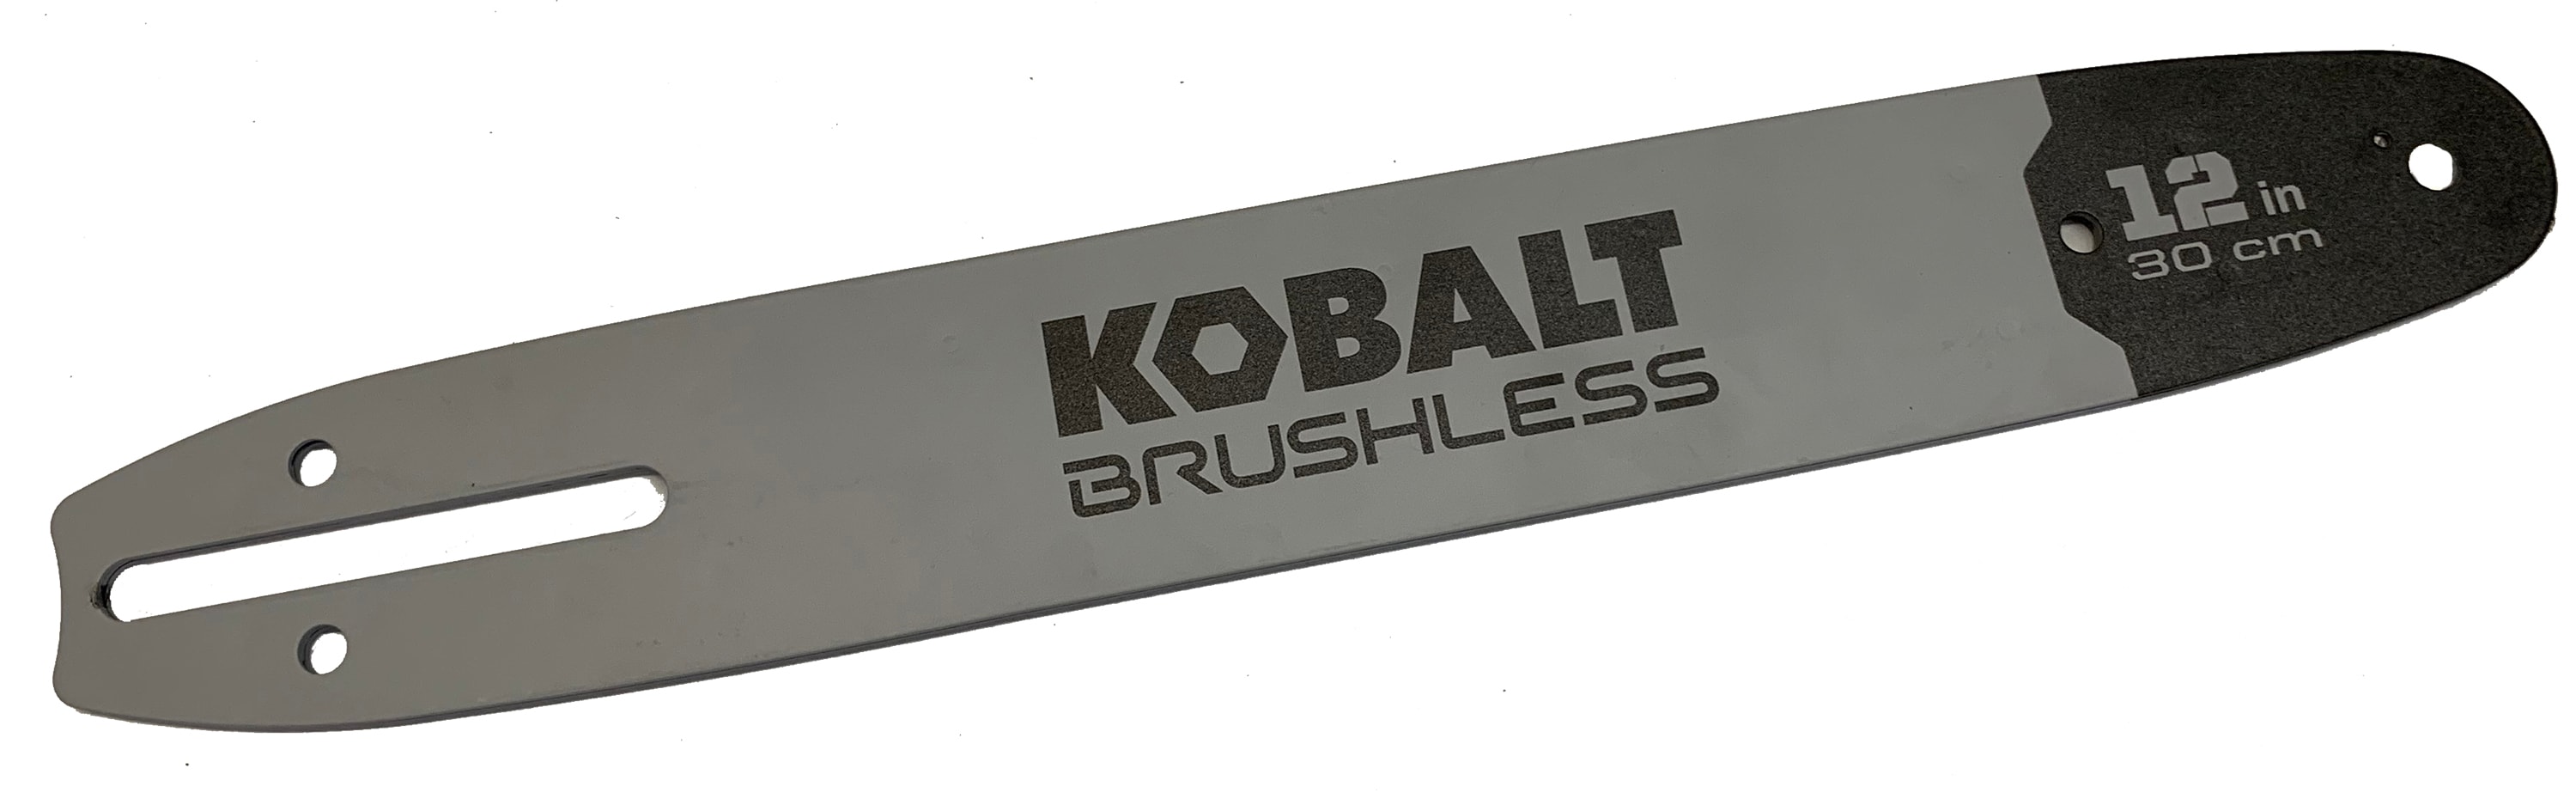 Kobalt KSG 124-03